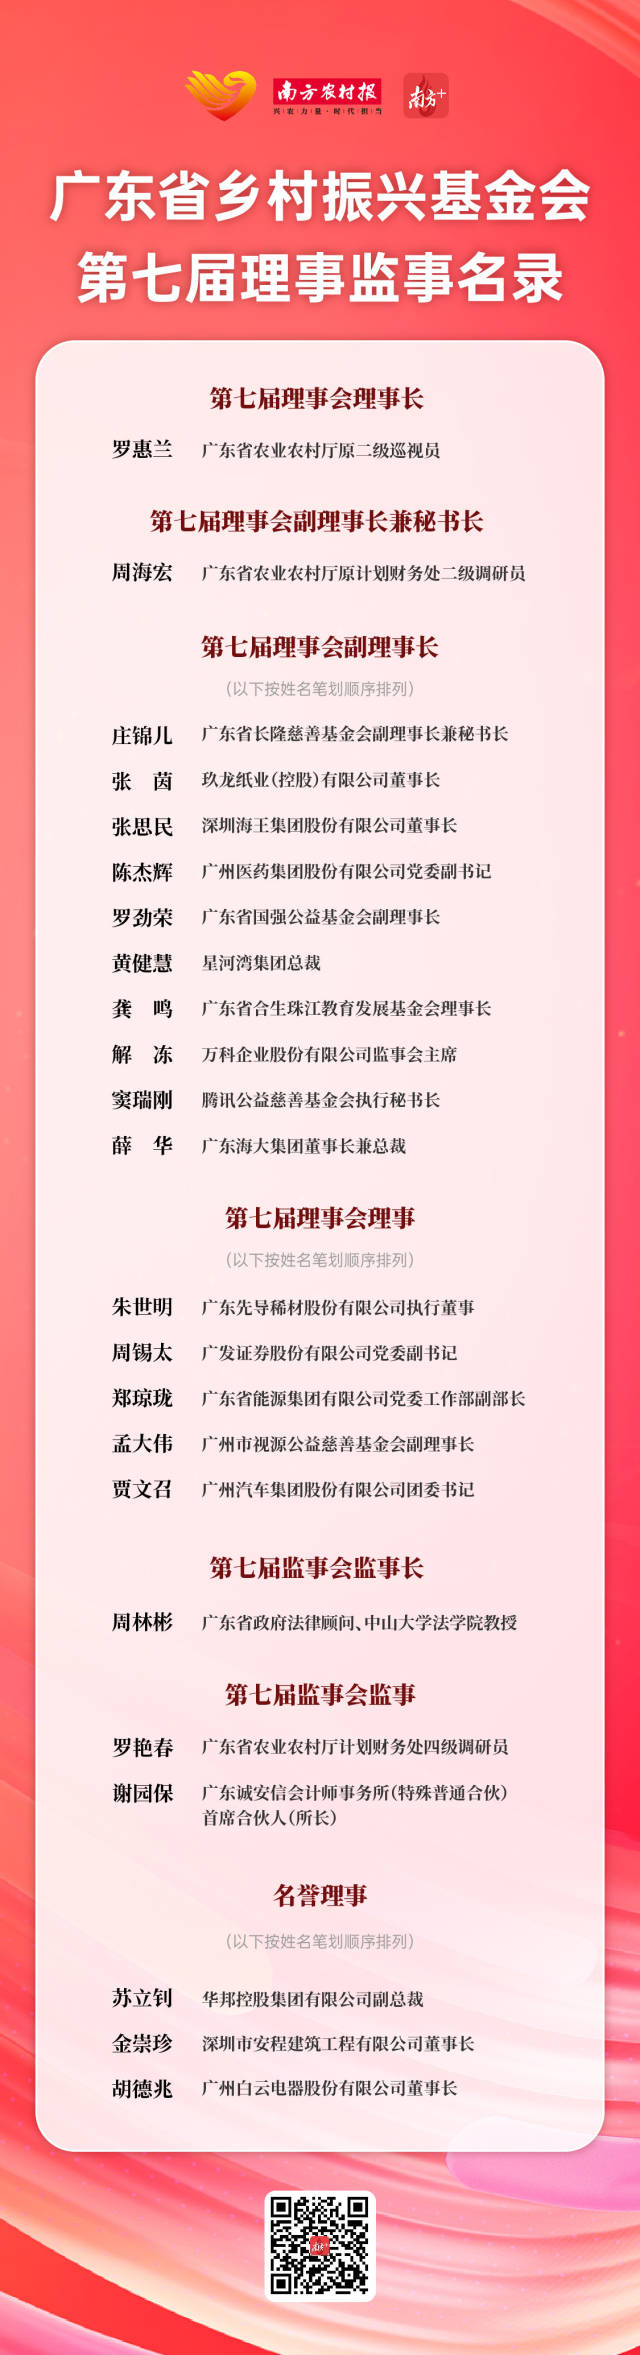 广东省乡村振兴基金会第七届理事监事名录。